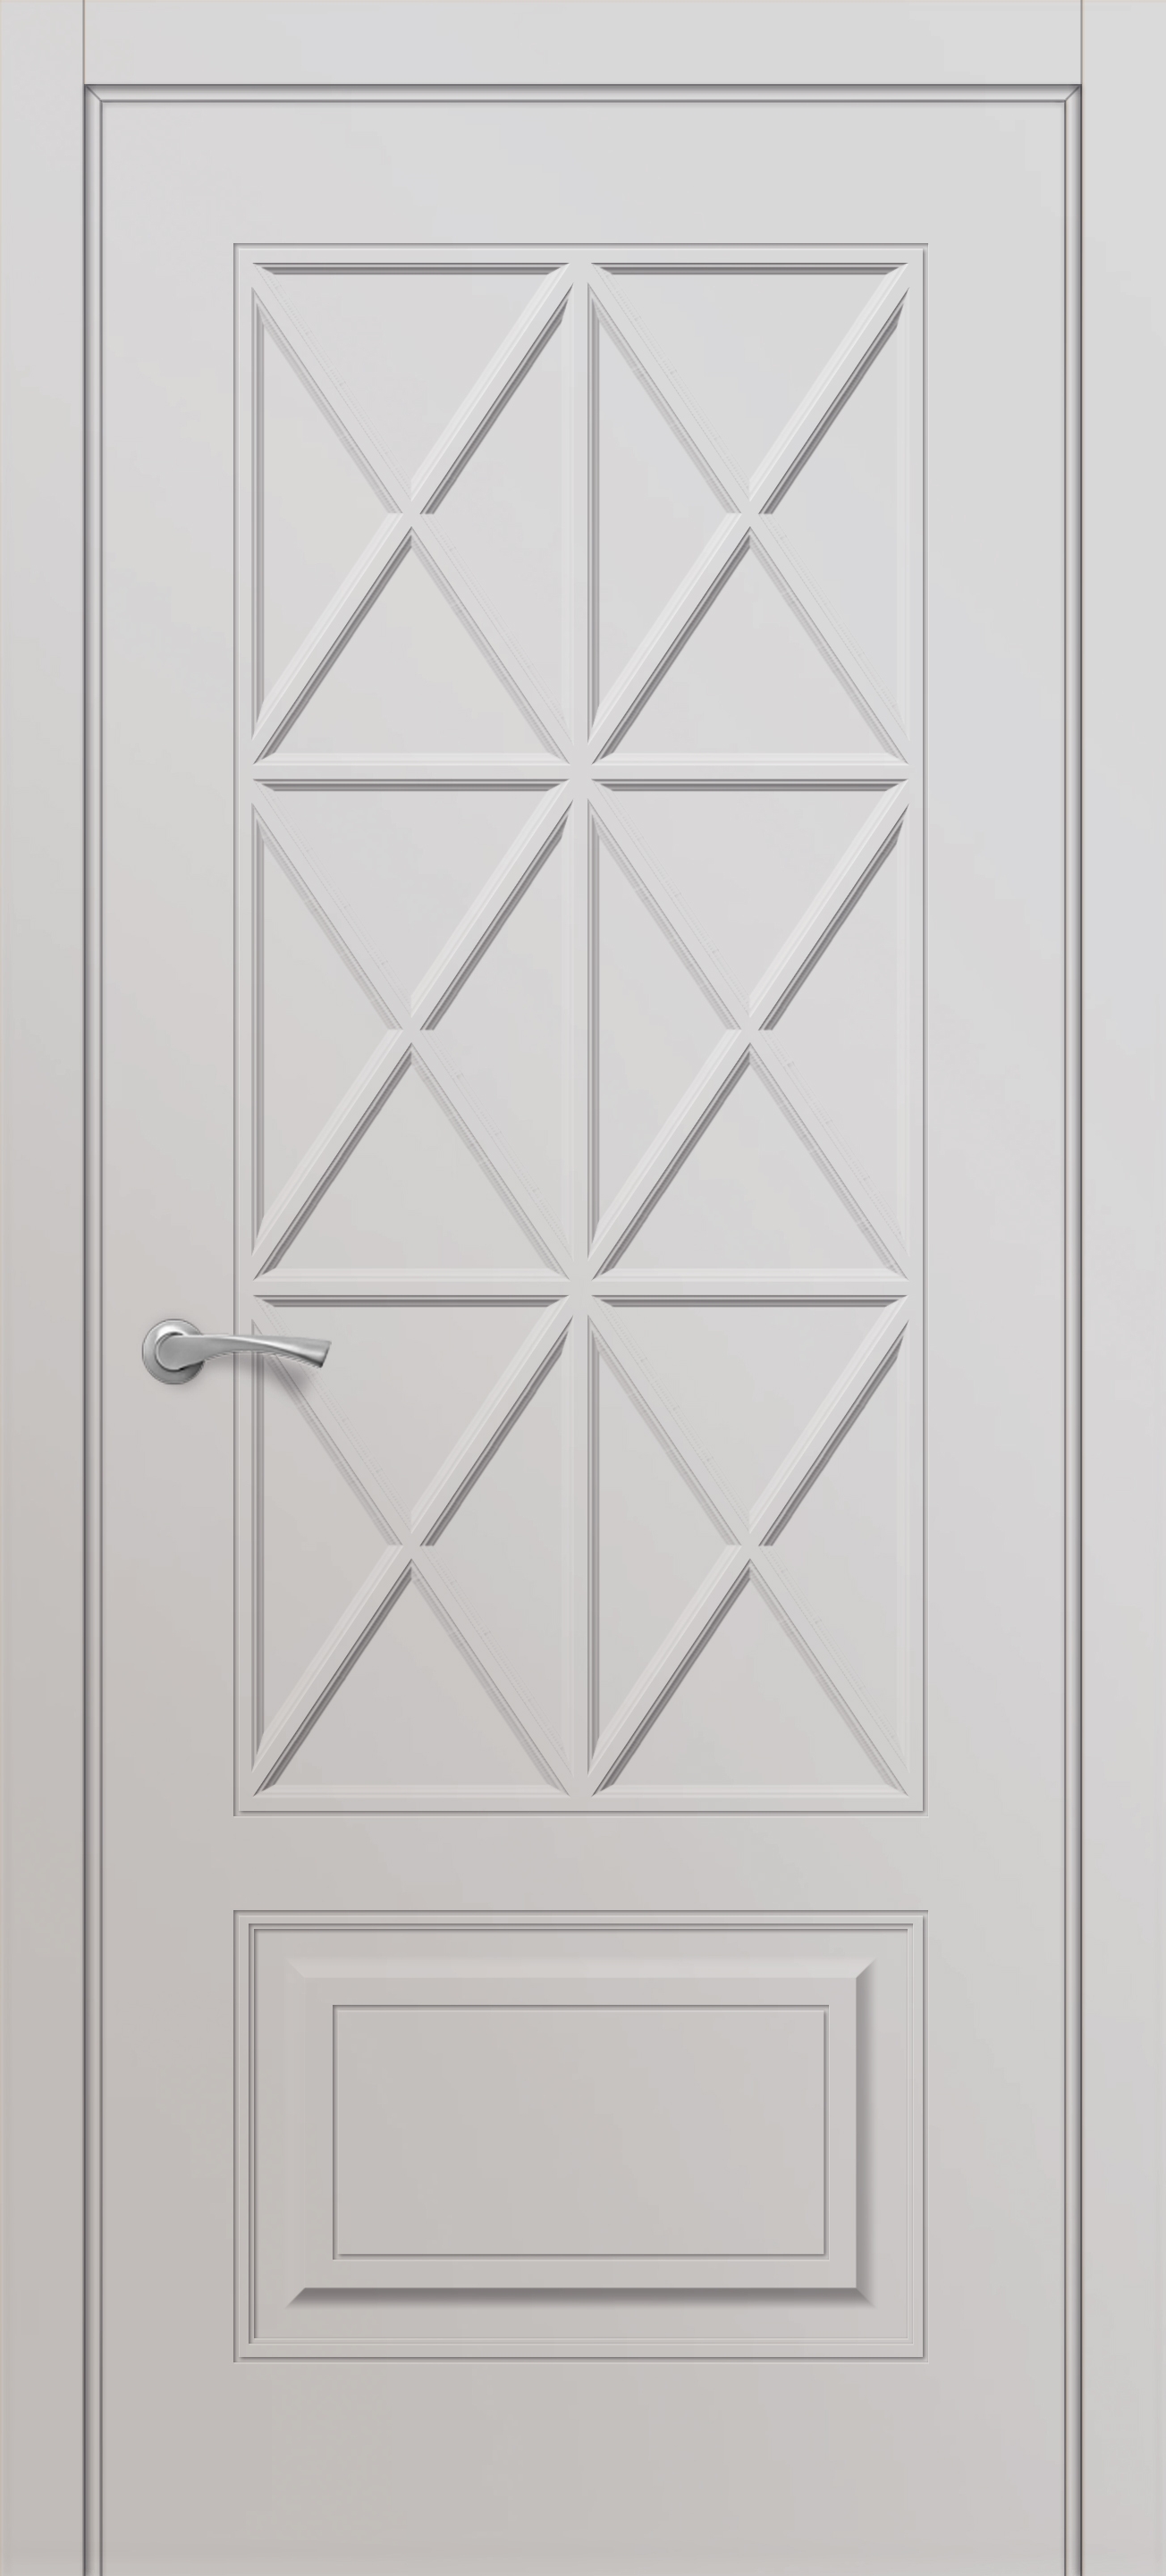 Двери межкомнатные белые эмаль купить. Дверь Волховец; linea; артикул: 8048 МСР. Дверь Омега ПГ белая. С 18 эмаль дверь. Дверь Amore (эмаль белая).